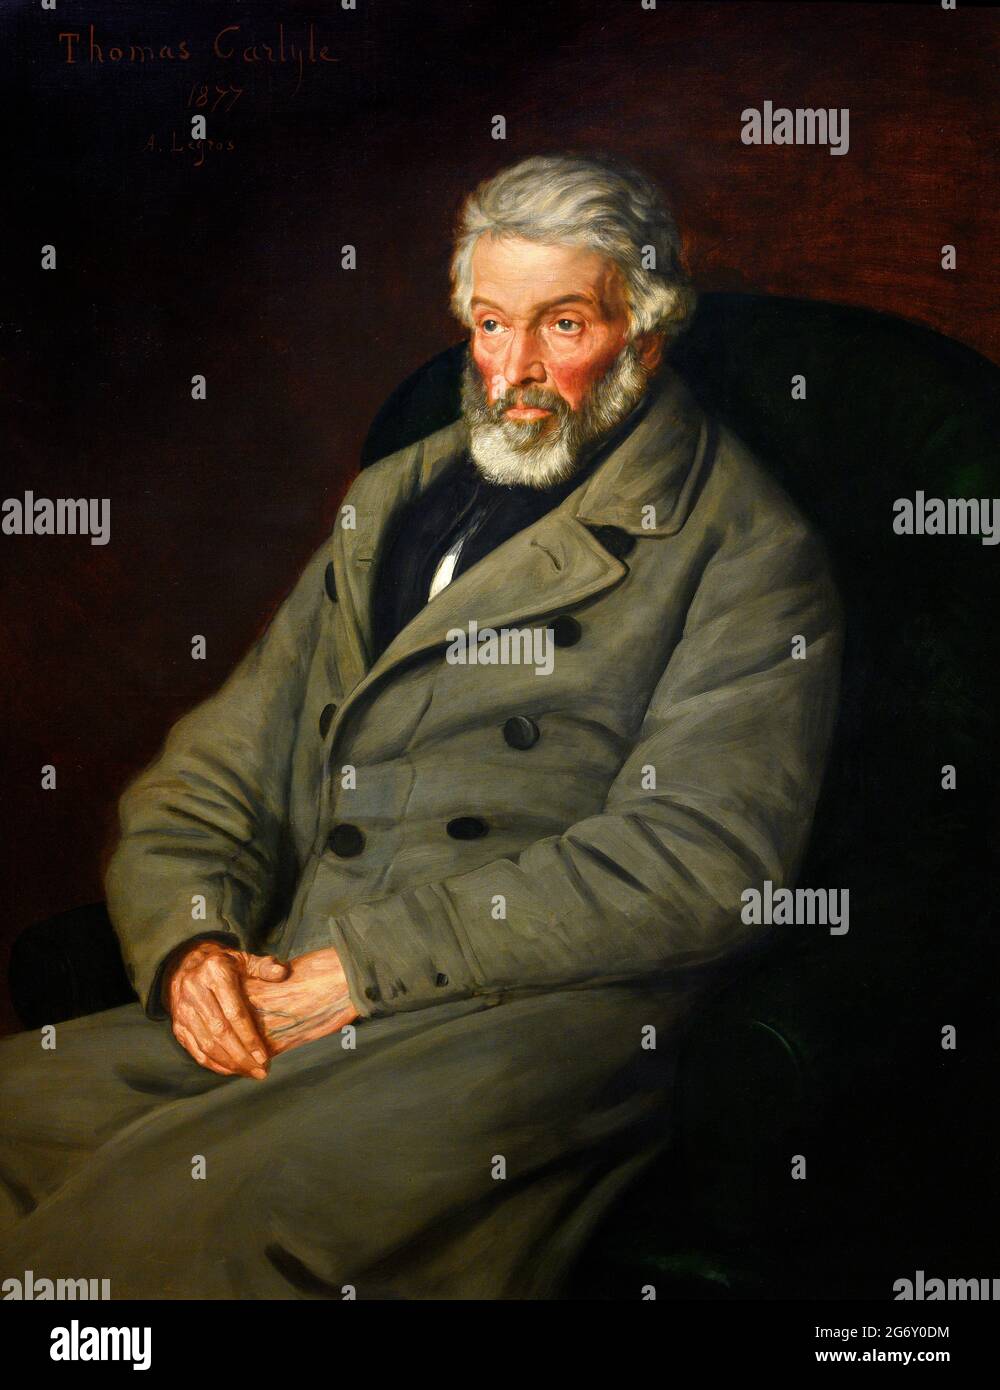 Thomas Carlyle. Portrait de l'historien et écrivain écossais Thomas Carlyle (1795-1881) par Alphone Legros, huile sur toile, 1877 Banque D'Images